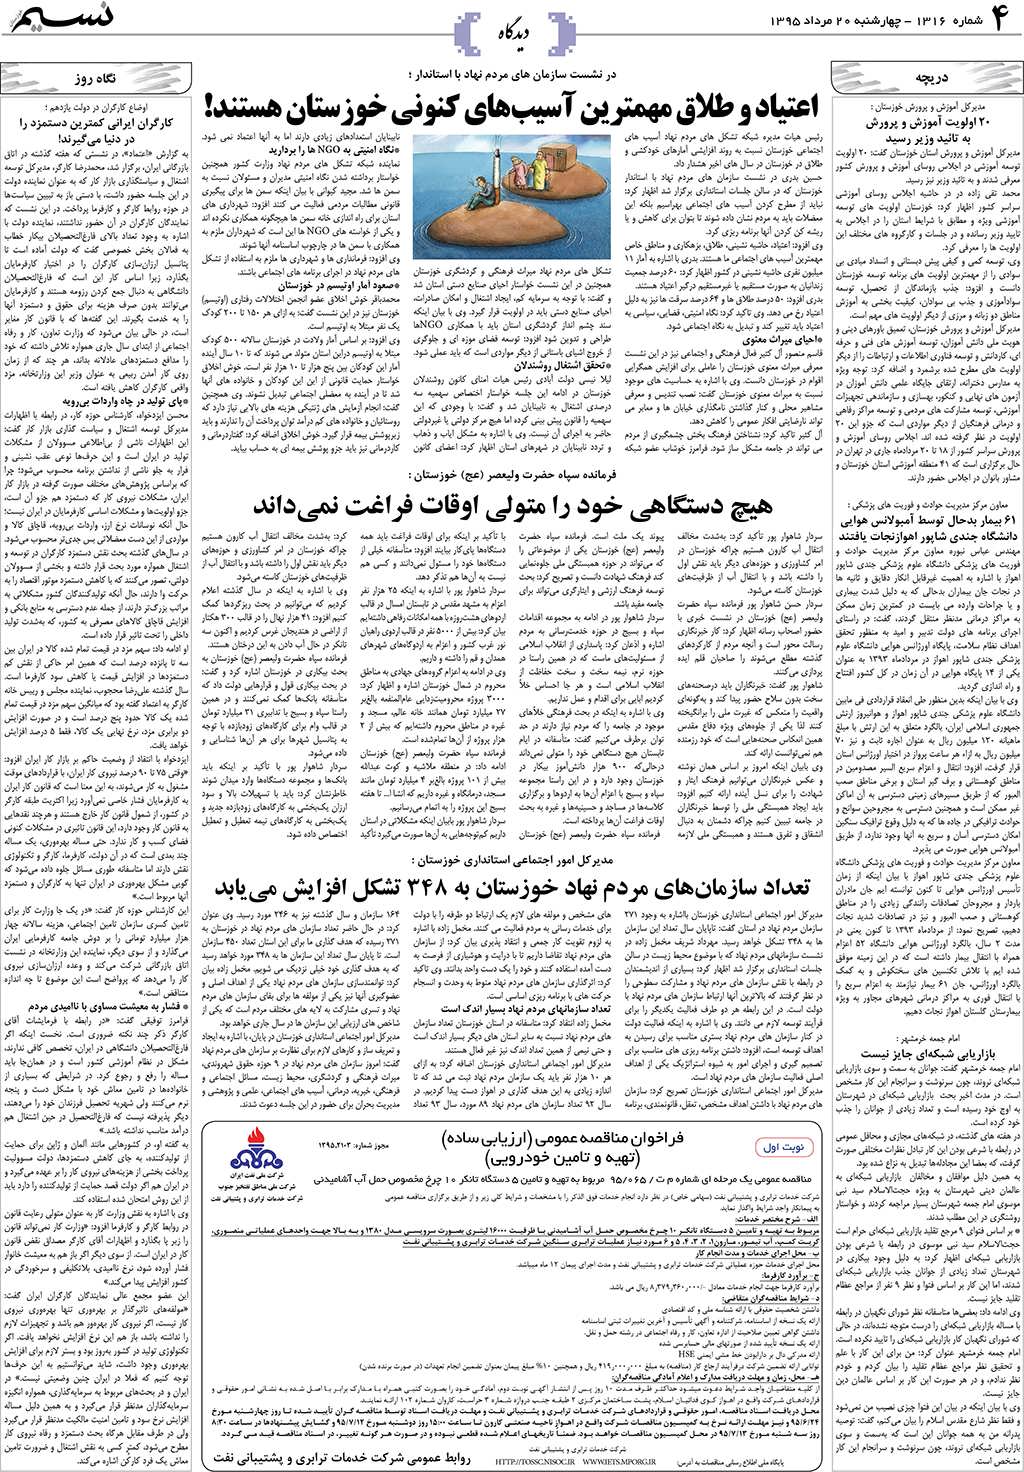 صفحه دیدگاه روزنامه نسیم شماره 1316